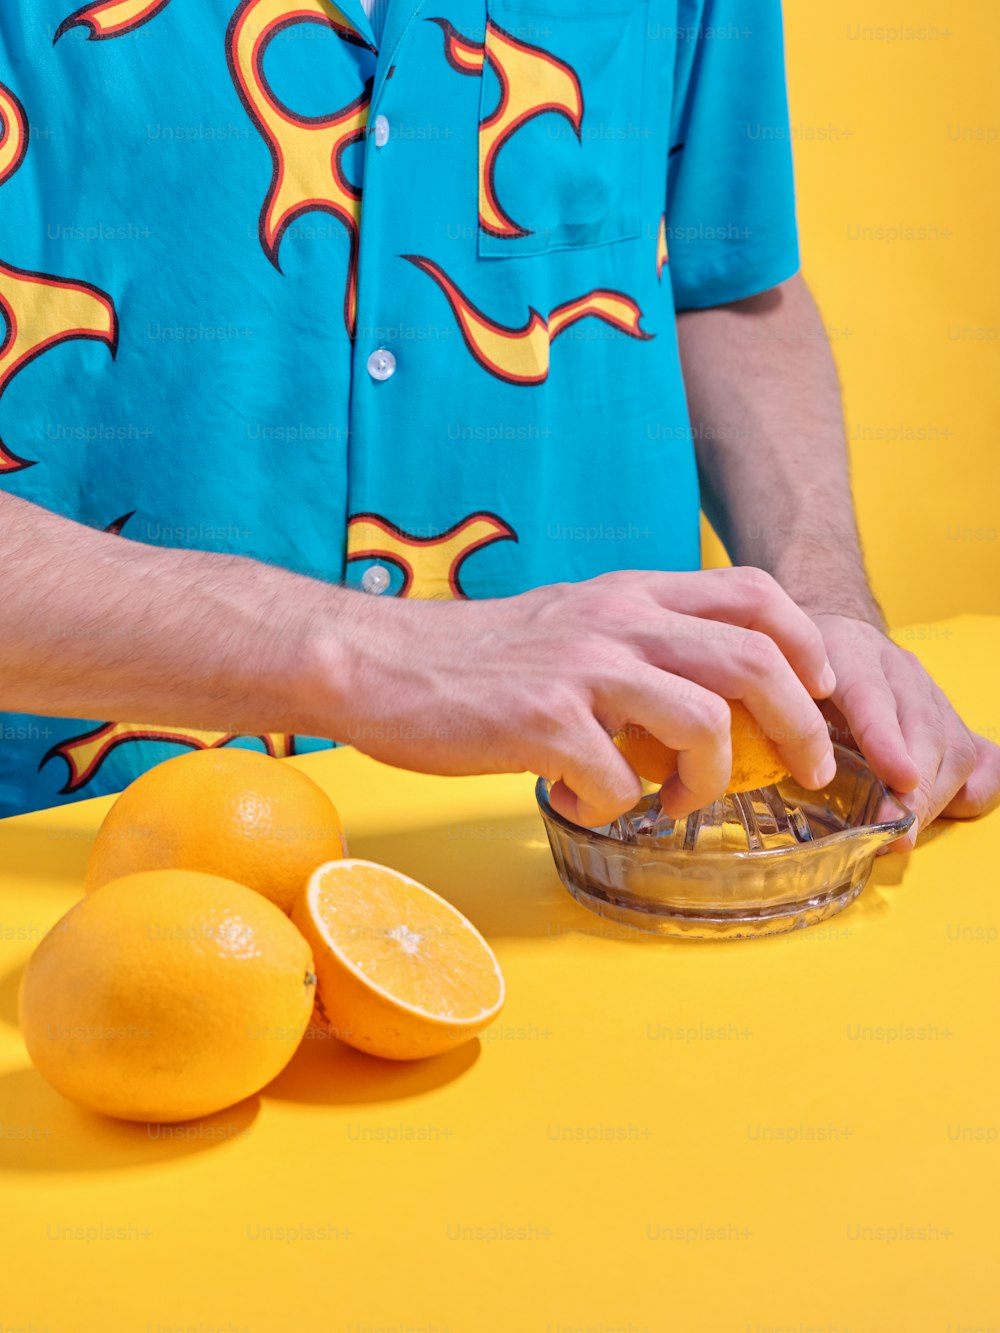 a man in a blue shirt is peeling an orange